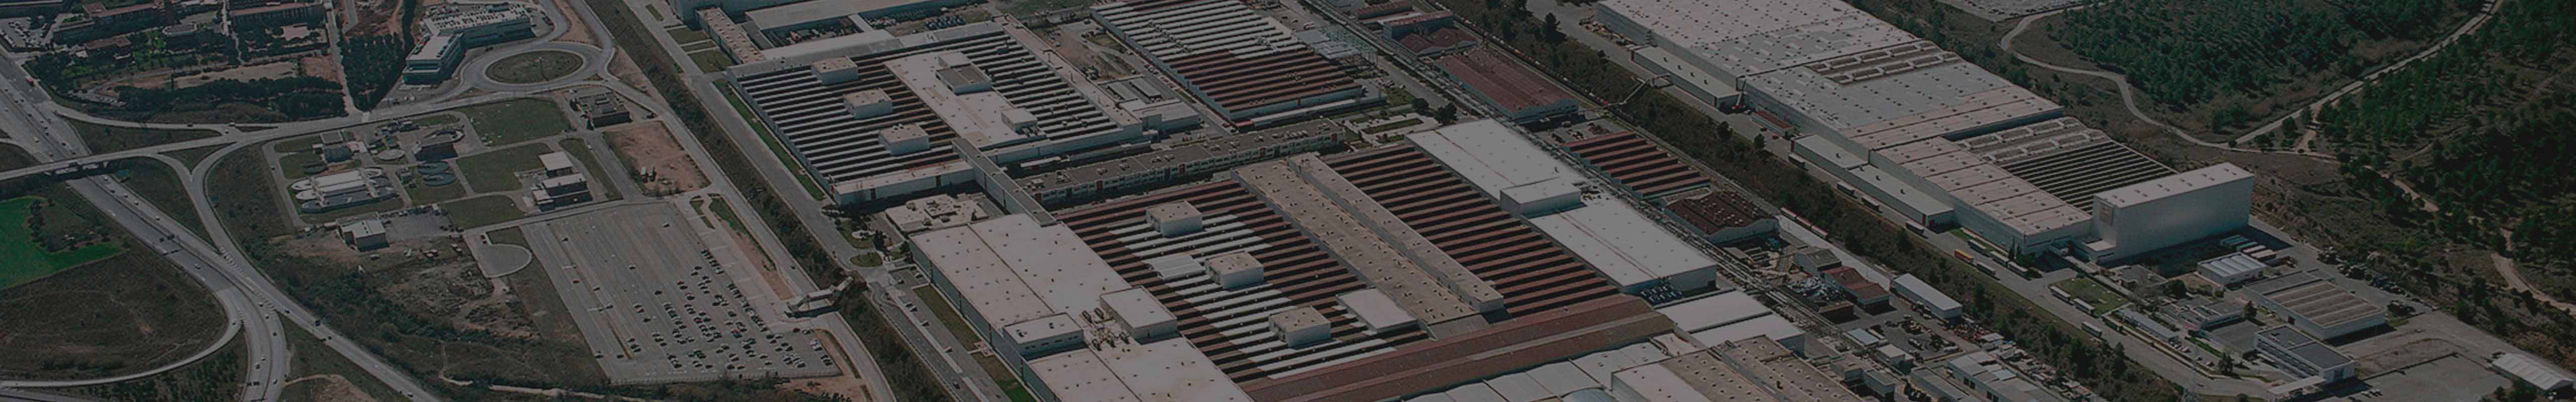 SEATs bilfabrik Martorell utanför Barcelona, sedd ur drönarvy